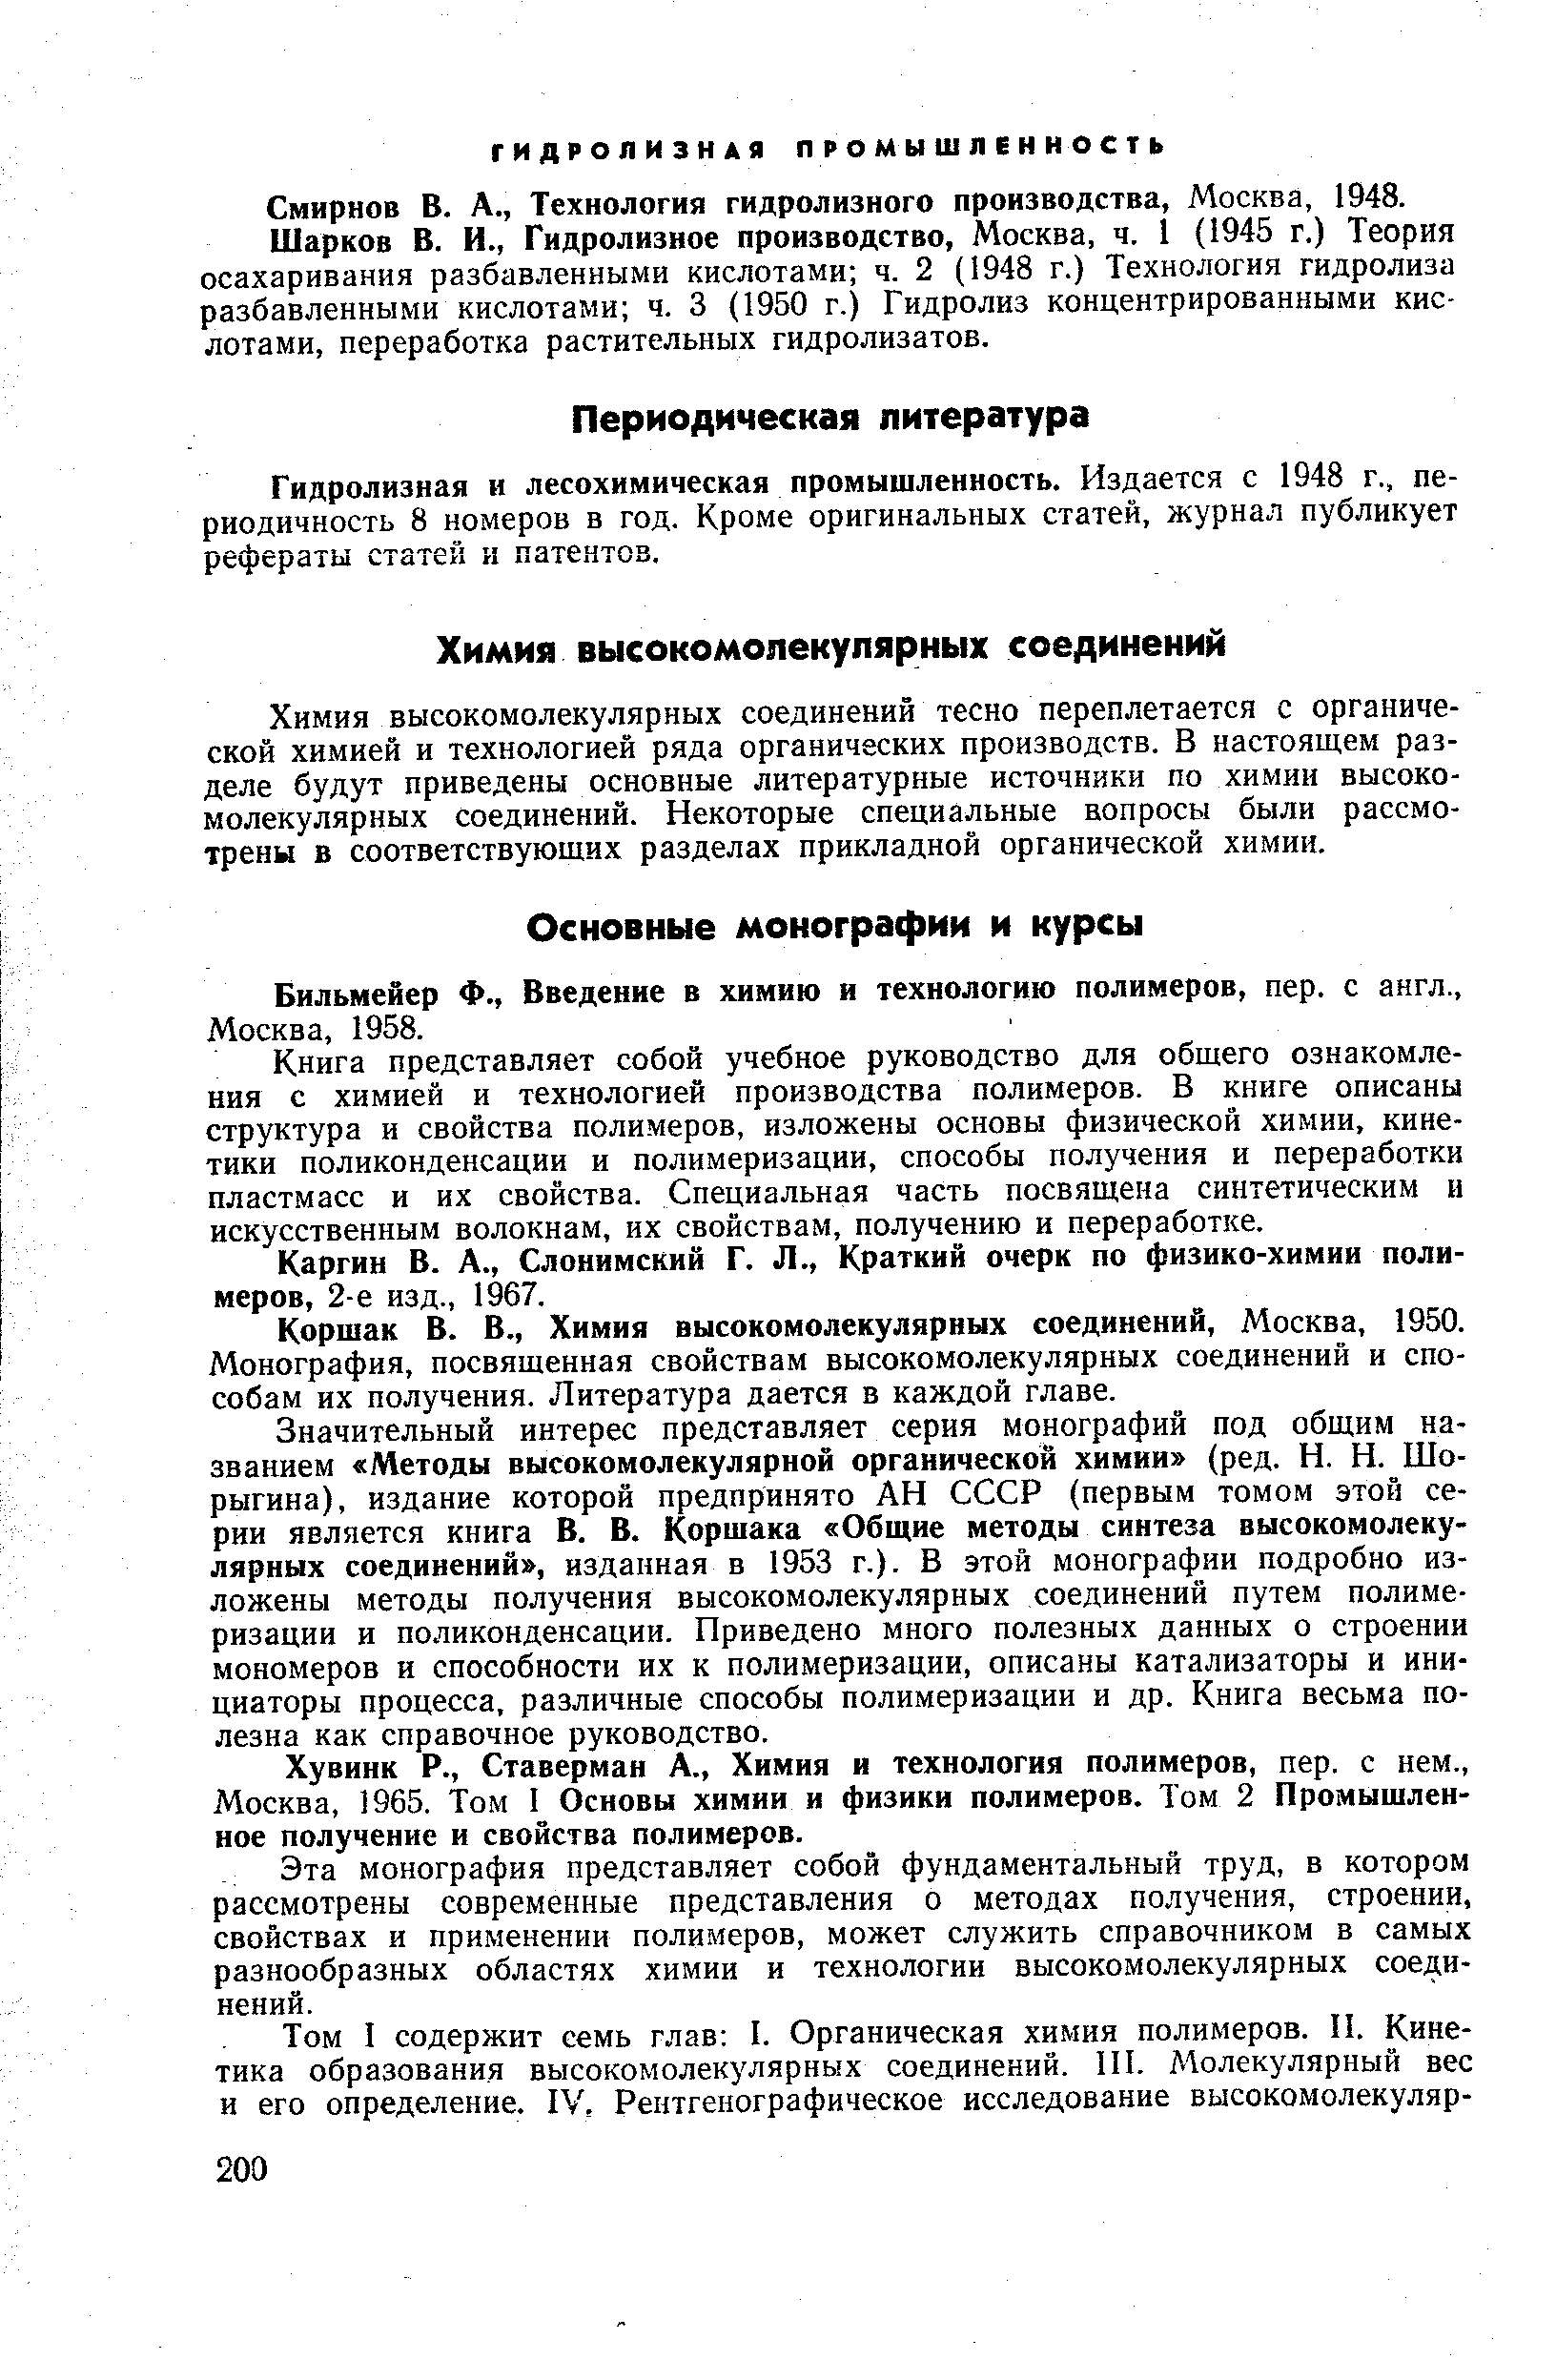 Смирнов в. А., Технология гидролизного производства, Москва, 1948.